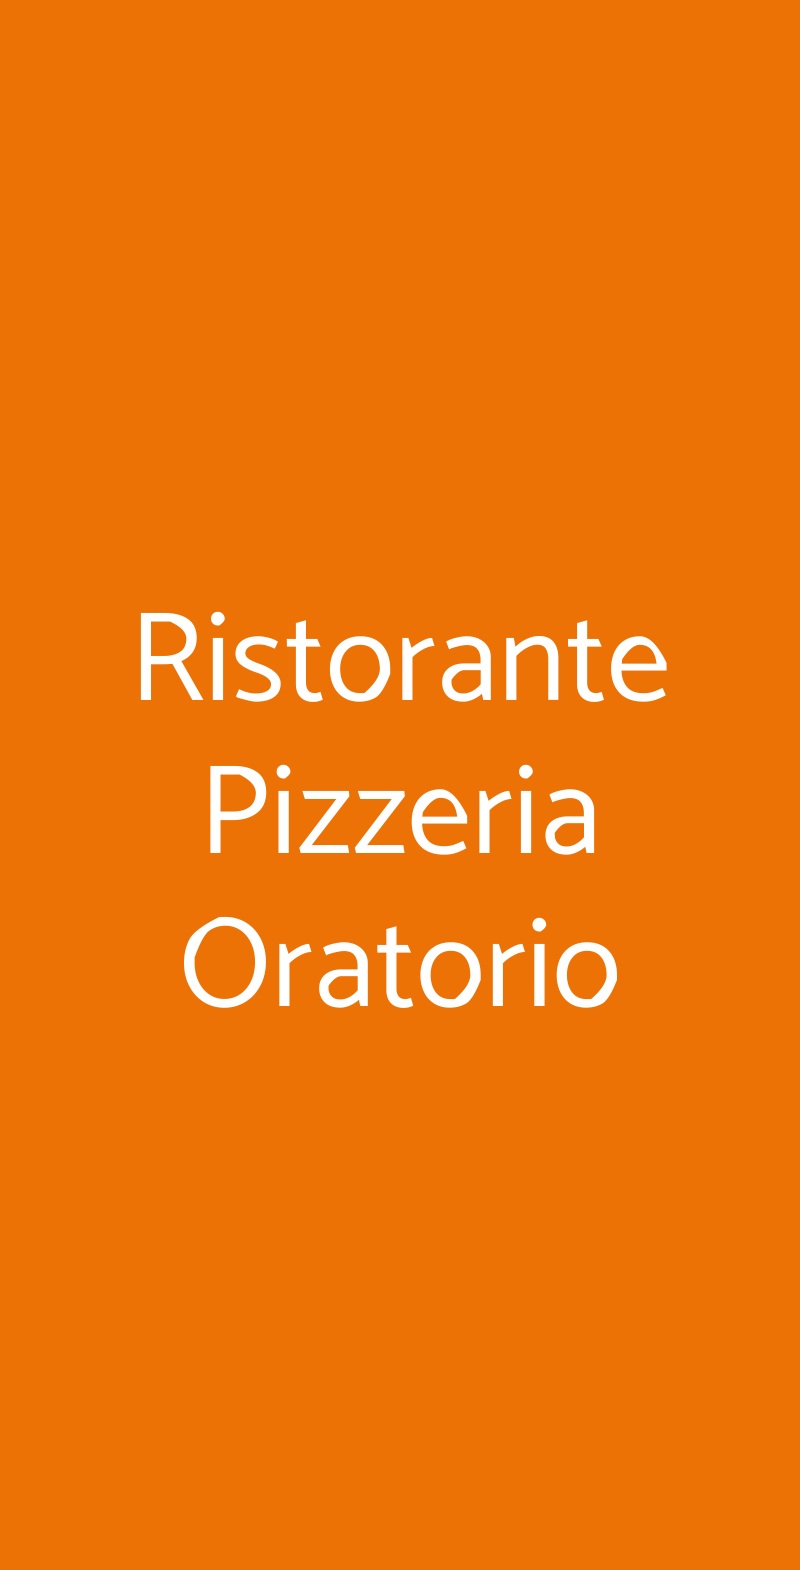 Ristorante Pizzeria Oratorio Alanno menù 1 pagina